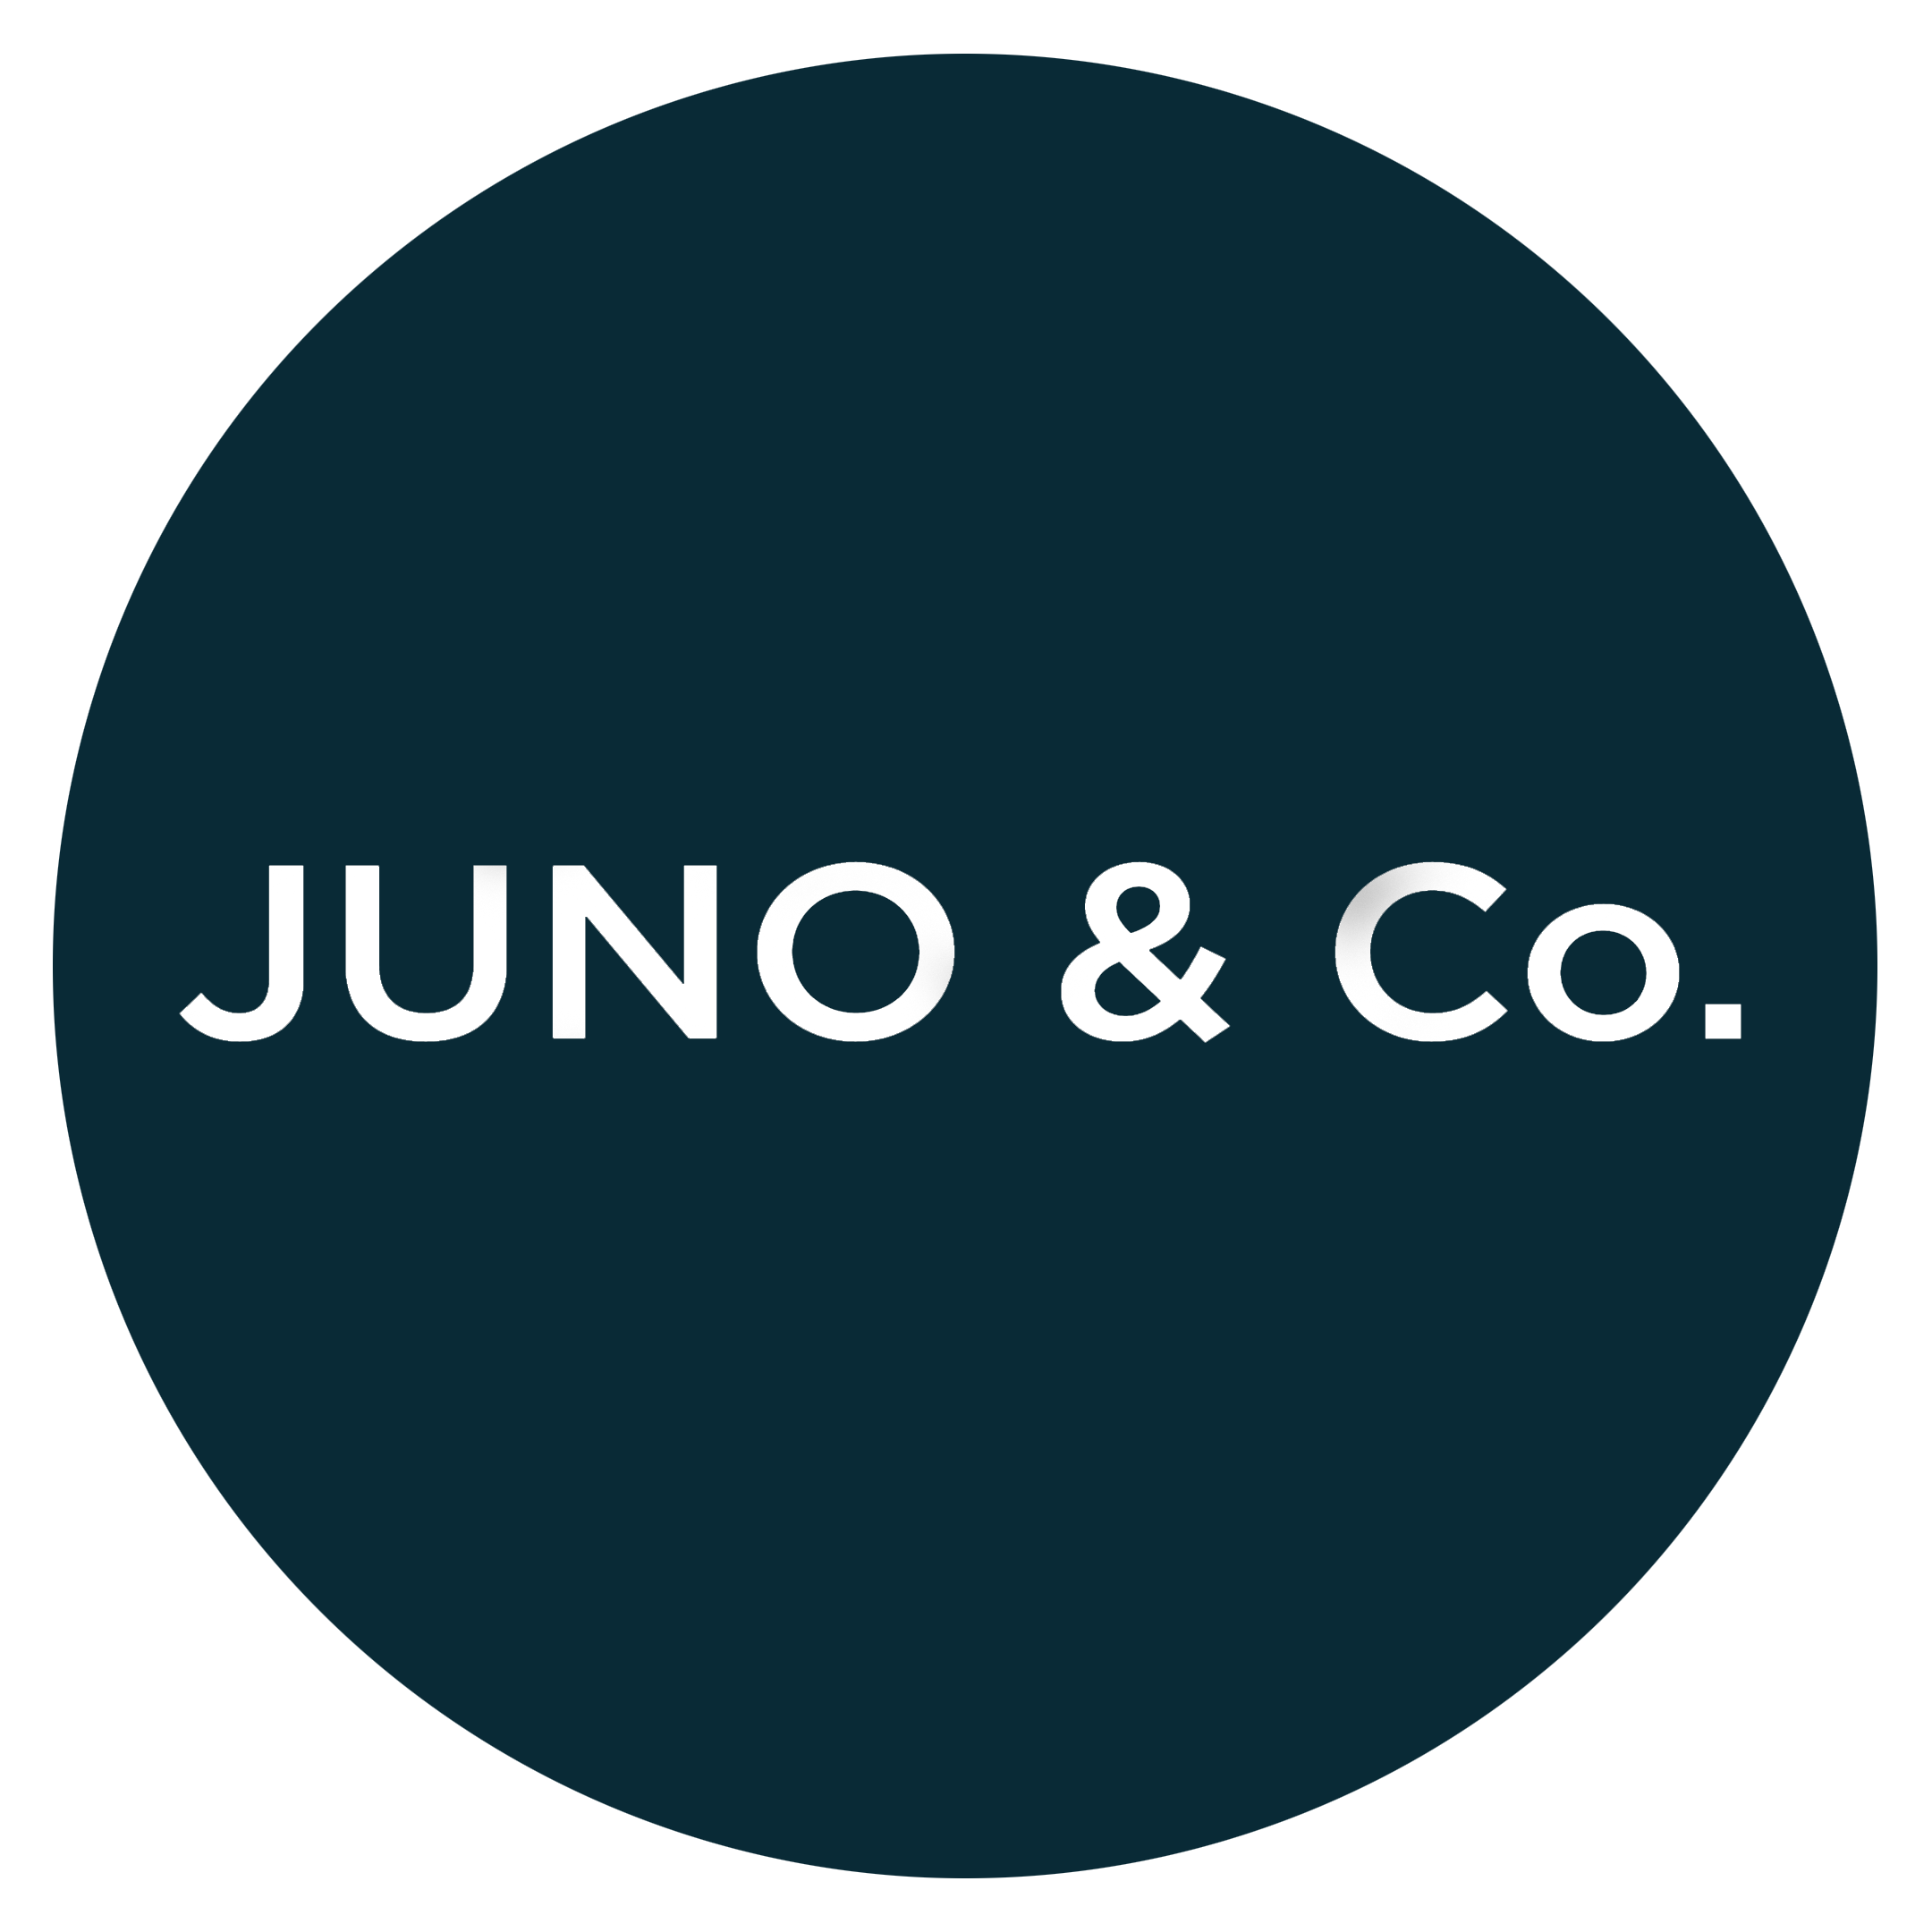 Juno & Co.